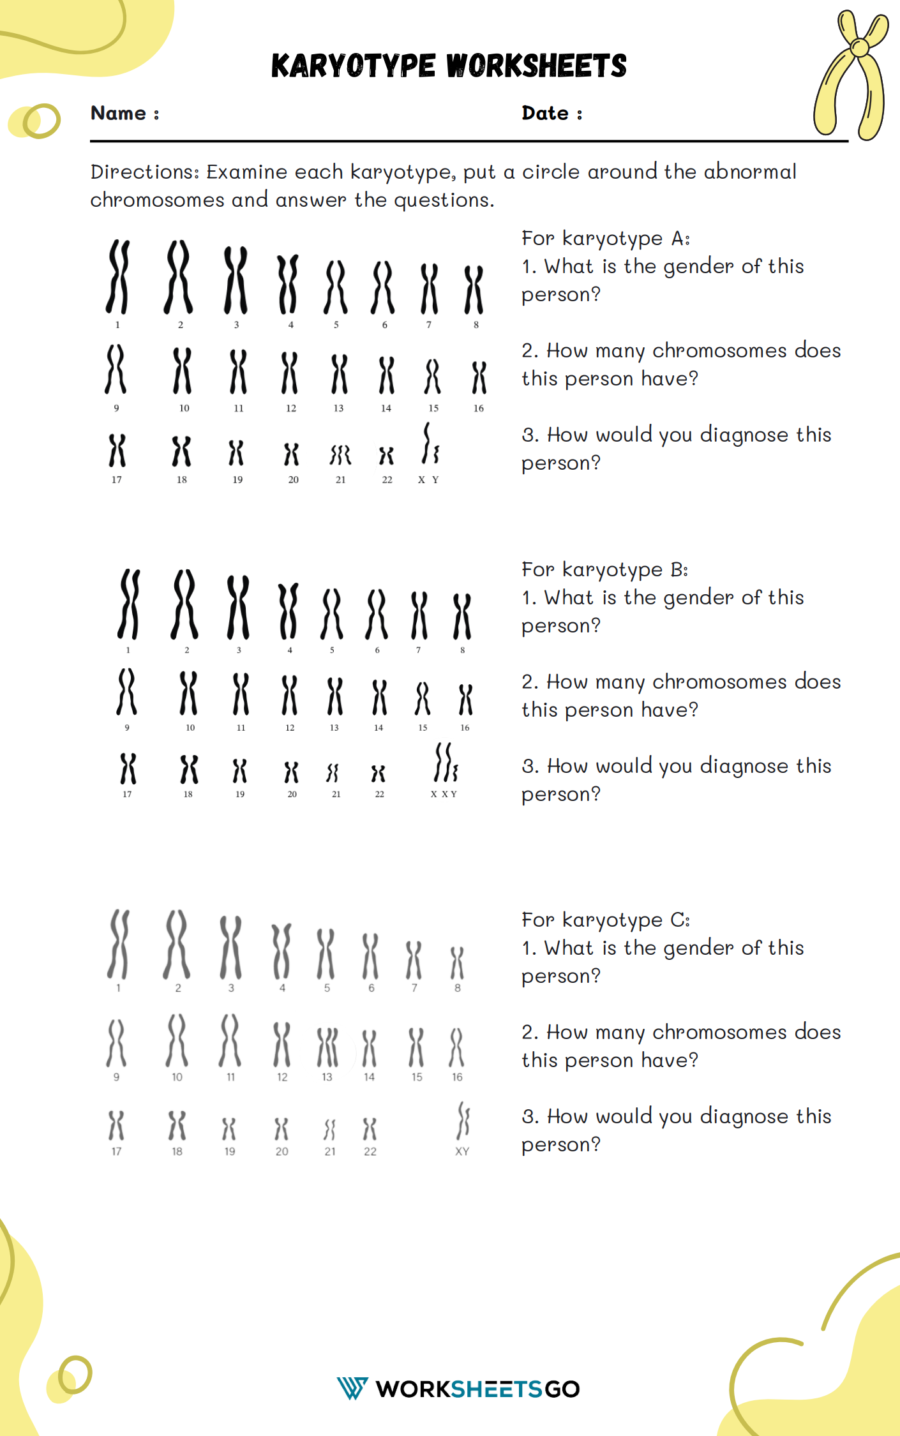 Karyotype Worksheet 1